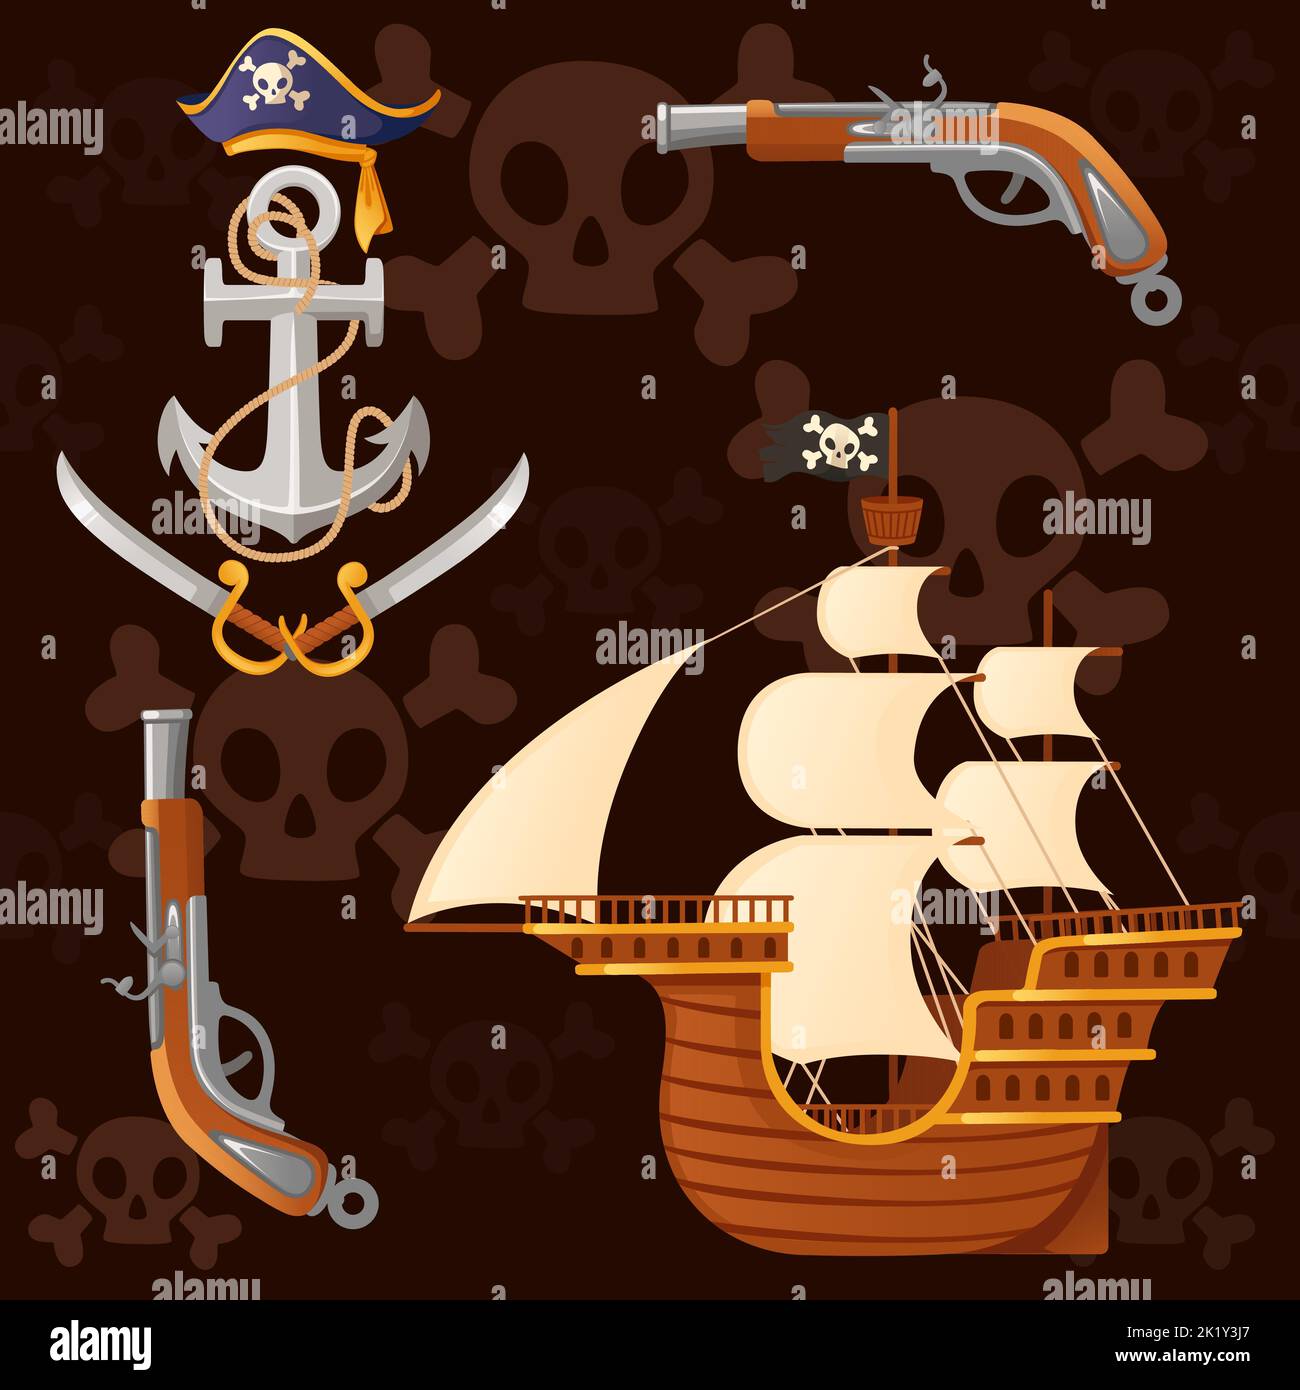 Motif fluide de thème pirate avec ancrage de navire et illustration de vecteur d'arme sur fond sombre Illustration de Vecteur